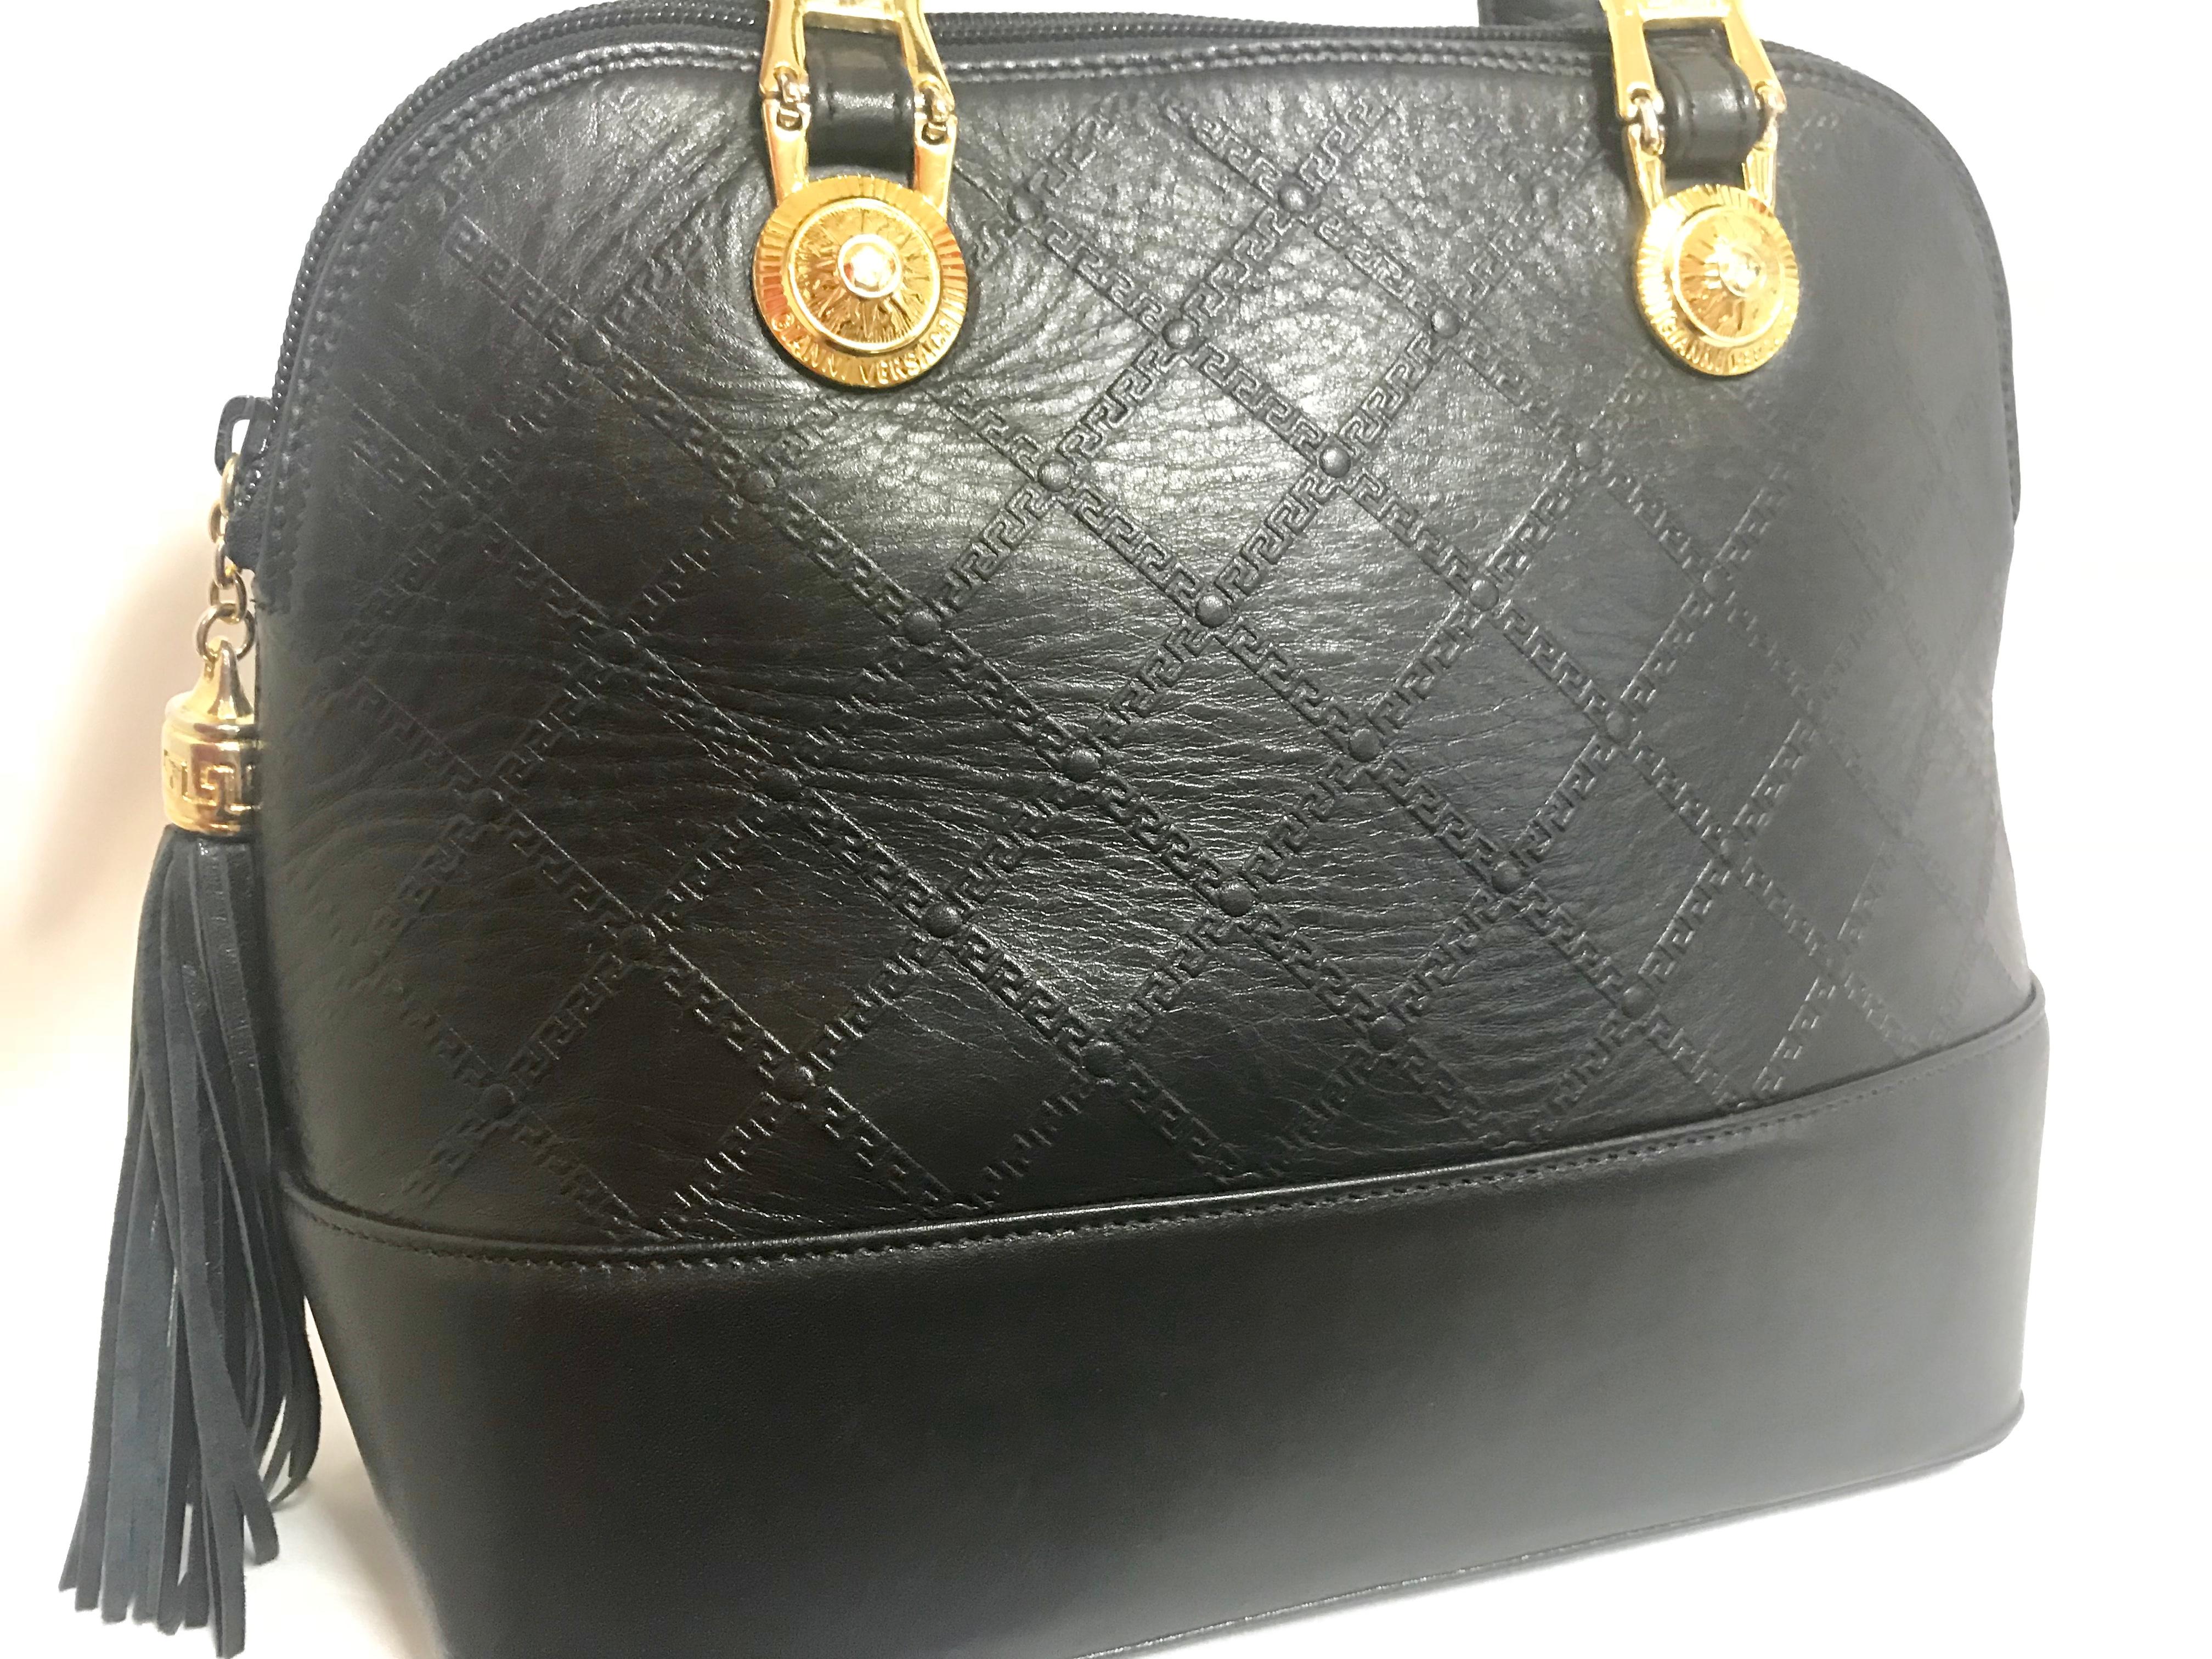 Gianni Versace Vintage black bolide shape bag with a tassel and sunburst motifs  For Sale 2